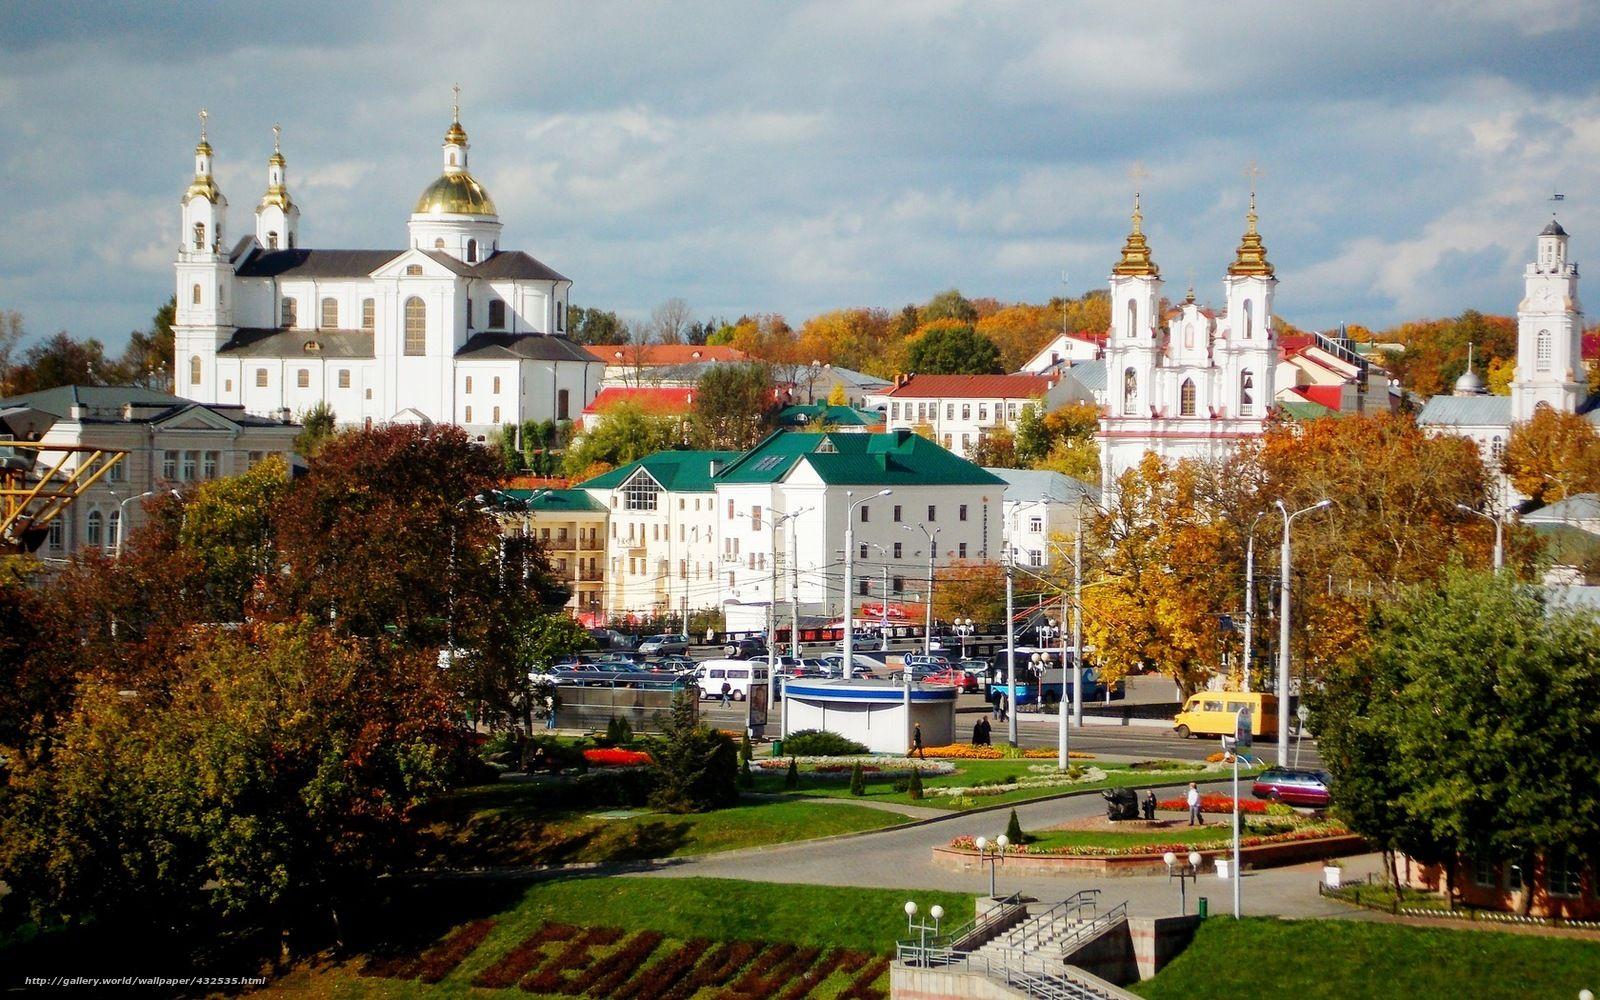 My native Belarus: The oldest cities in Belarus